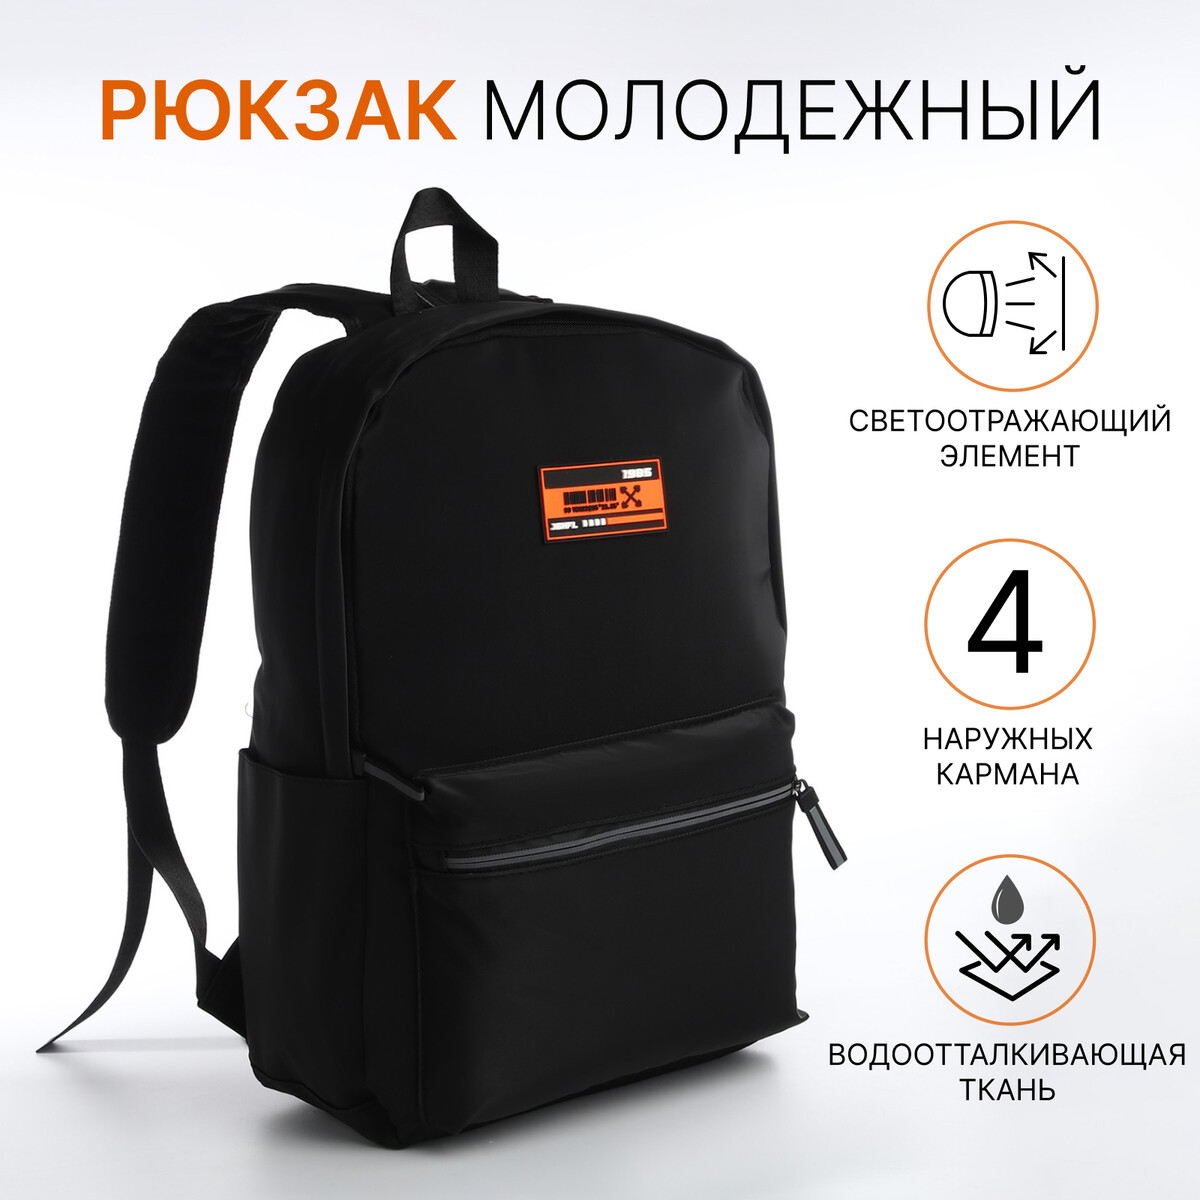 Рюкзак молодежный из текстиля на молнии, 4 кармана, цвет черный/оранжевый рюкзак 31 45 15 см отд на молнии 4 н кармана оранжевый